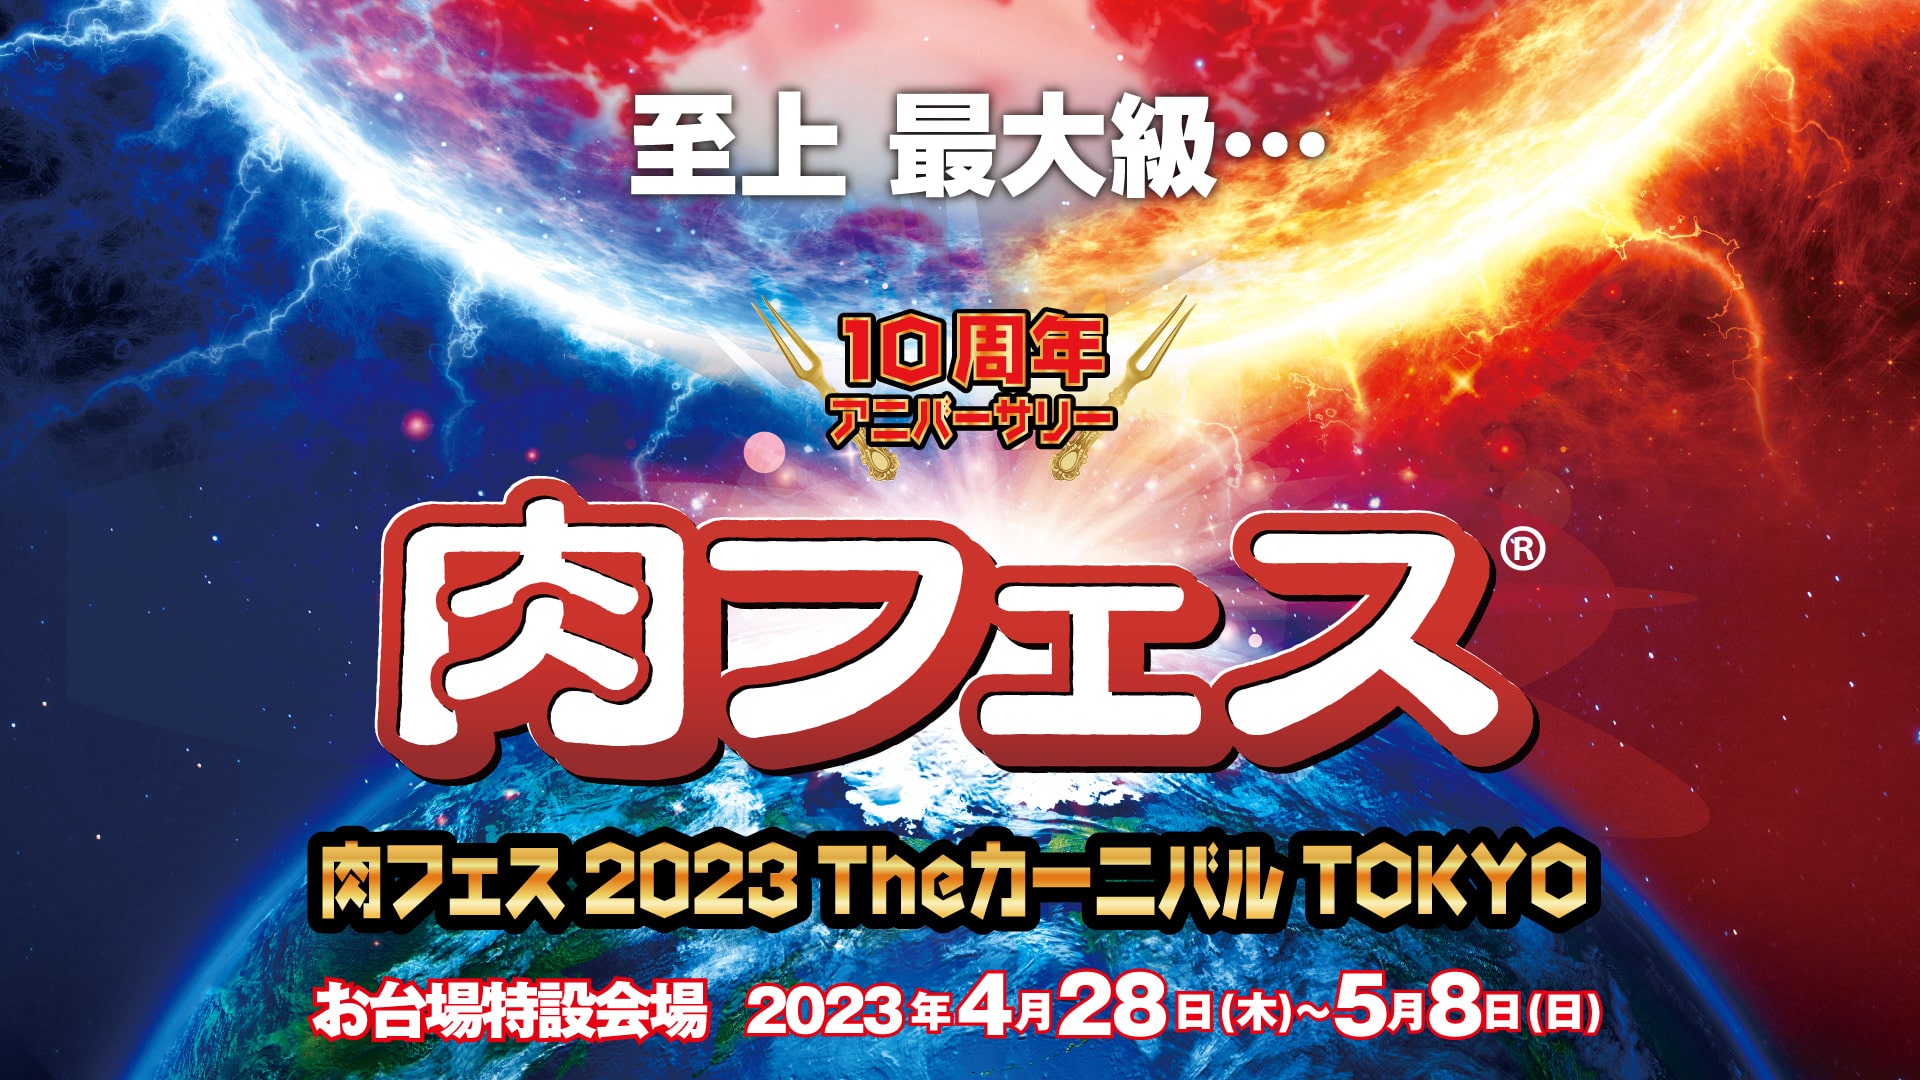 「肉フェス 2023 Theカーニバル TOKYO」開催決定!!